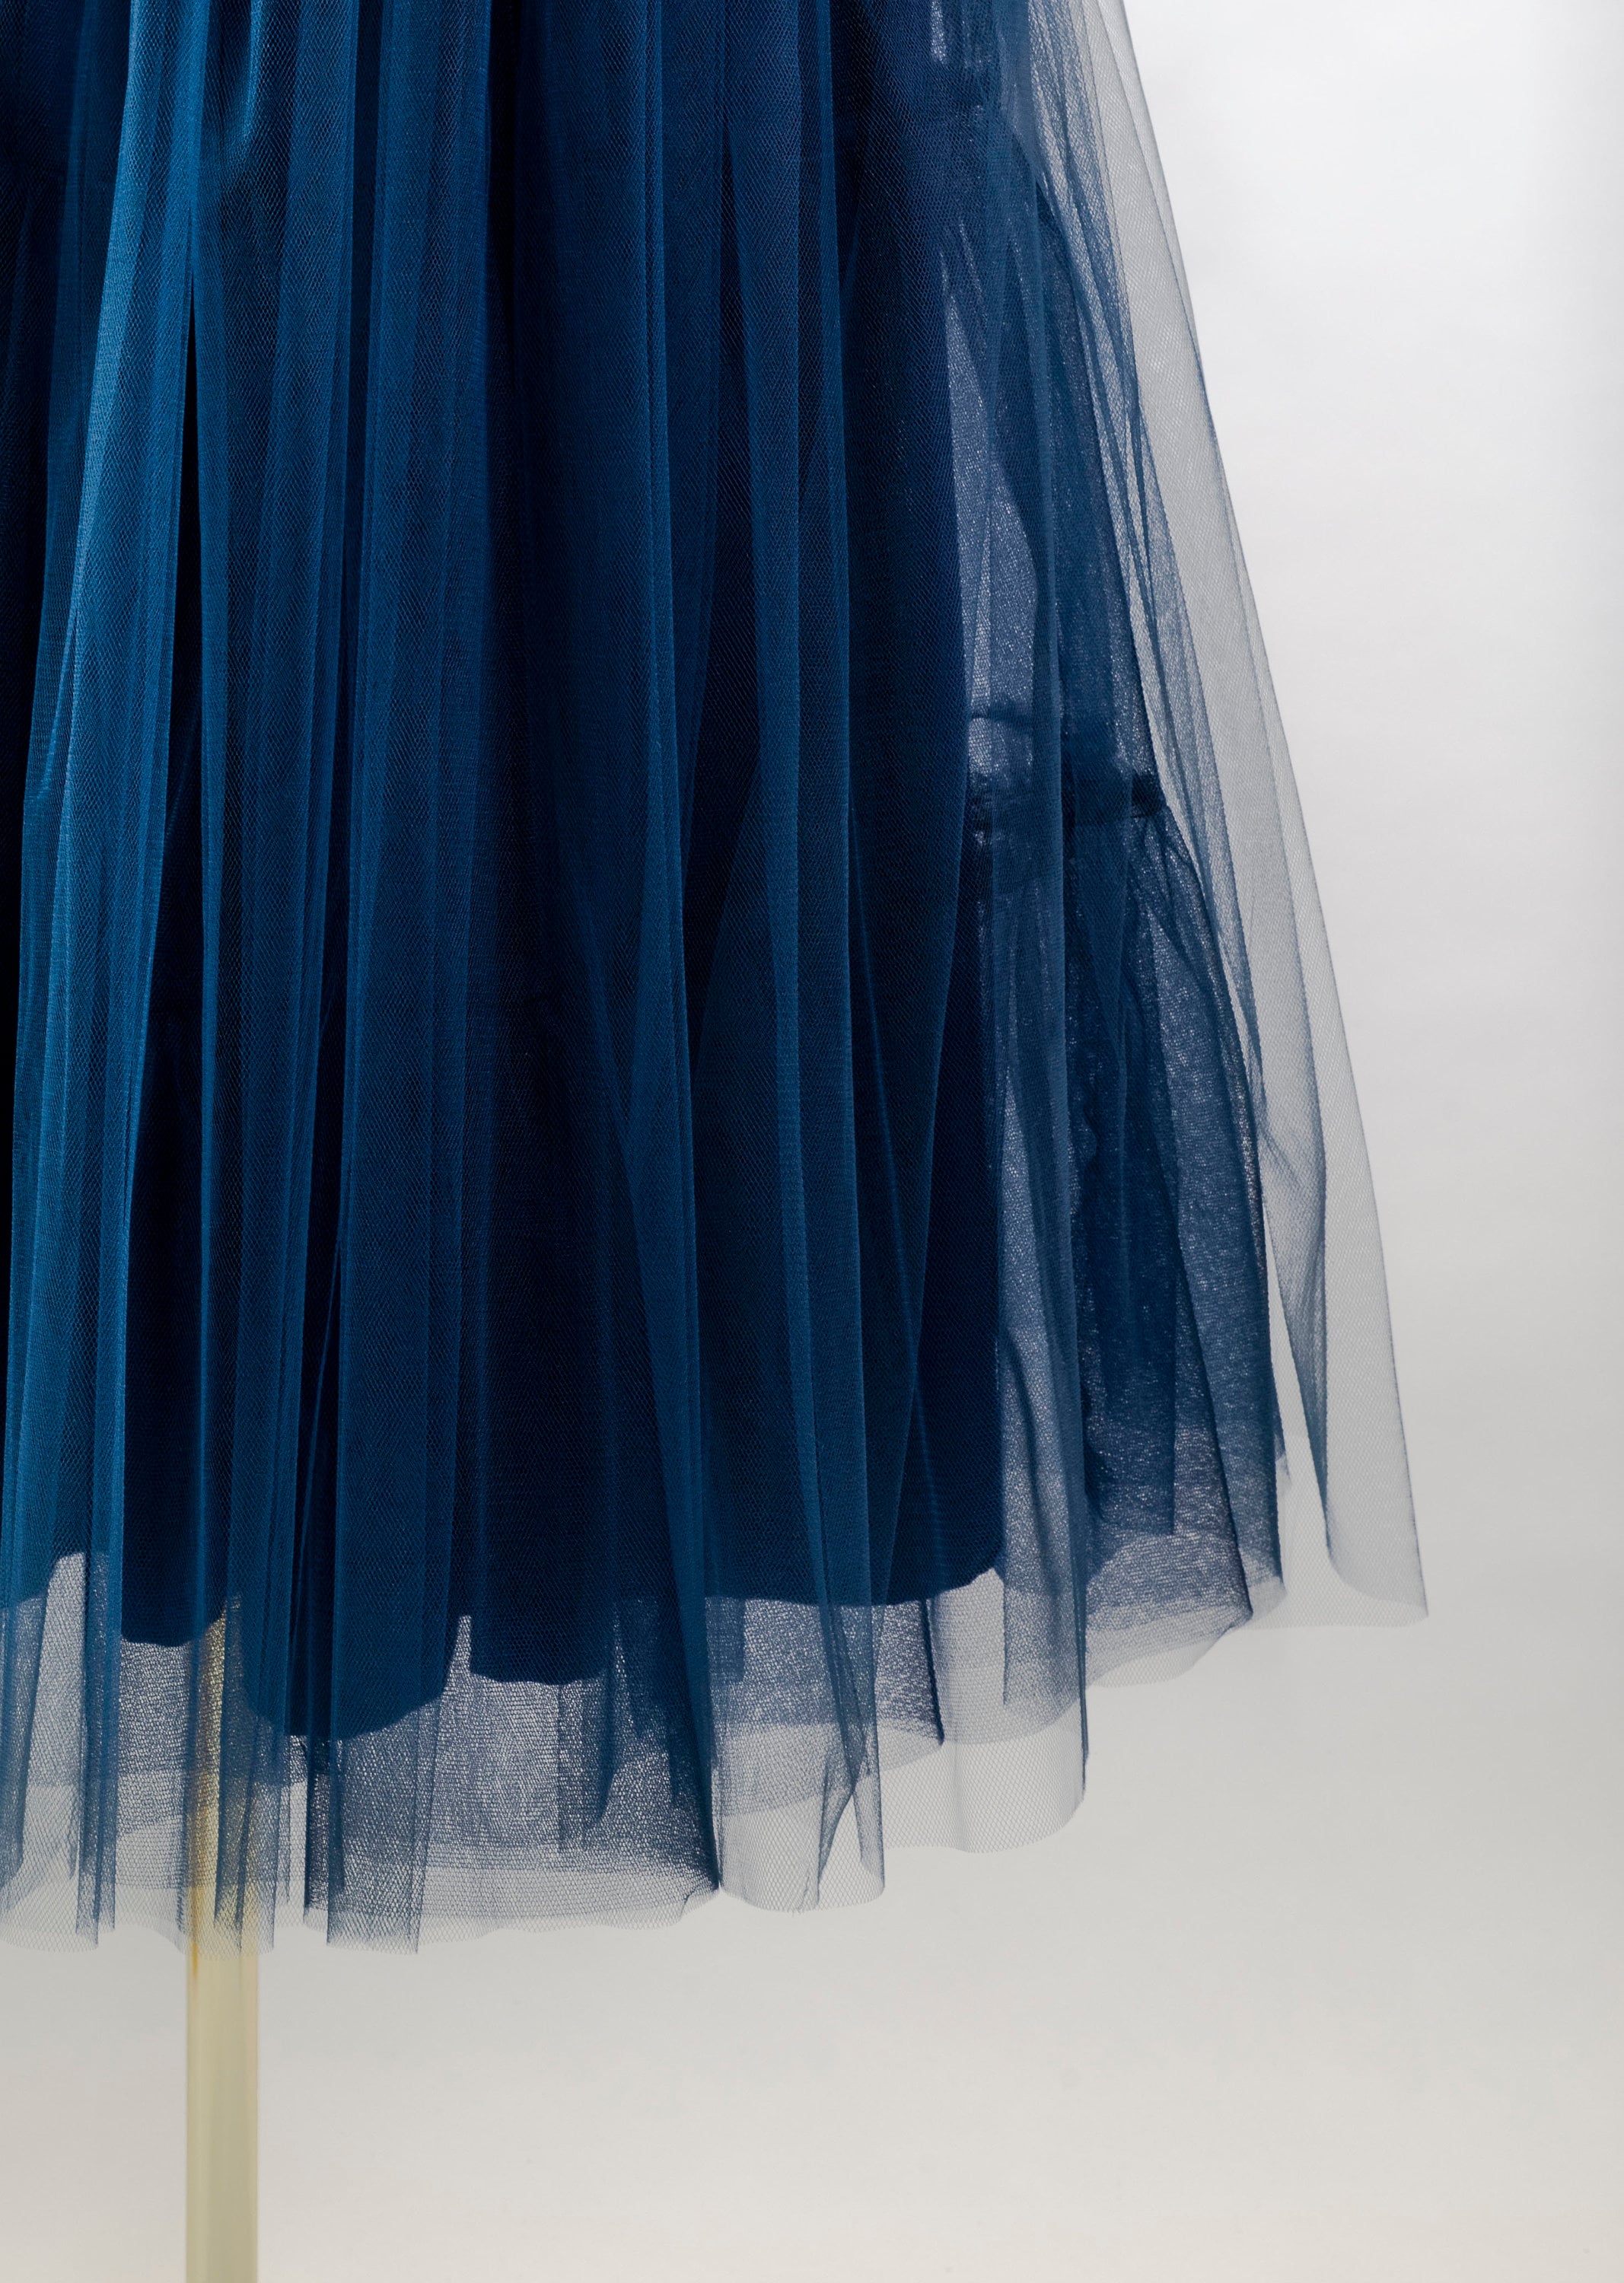 Navy Tulle Skirt Blue Net Skirt Bridesmaid Prom 1950s - Etsy UK